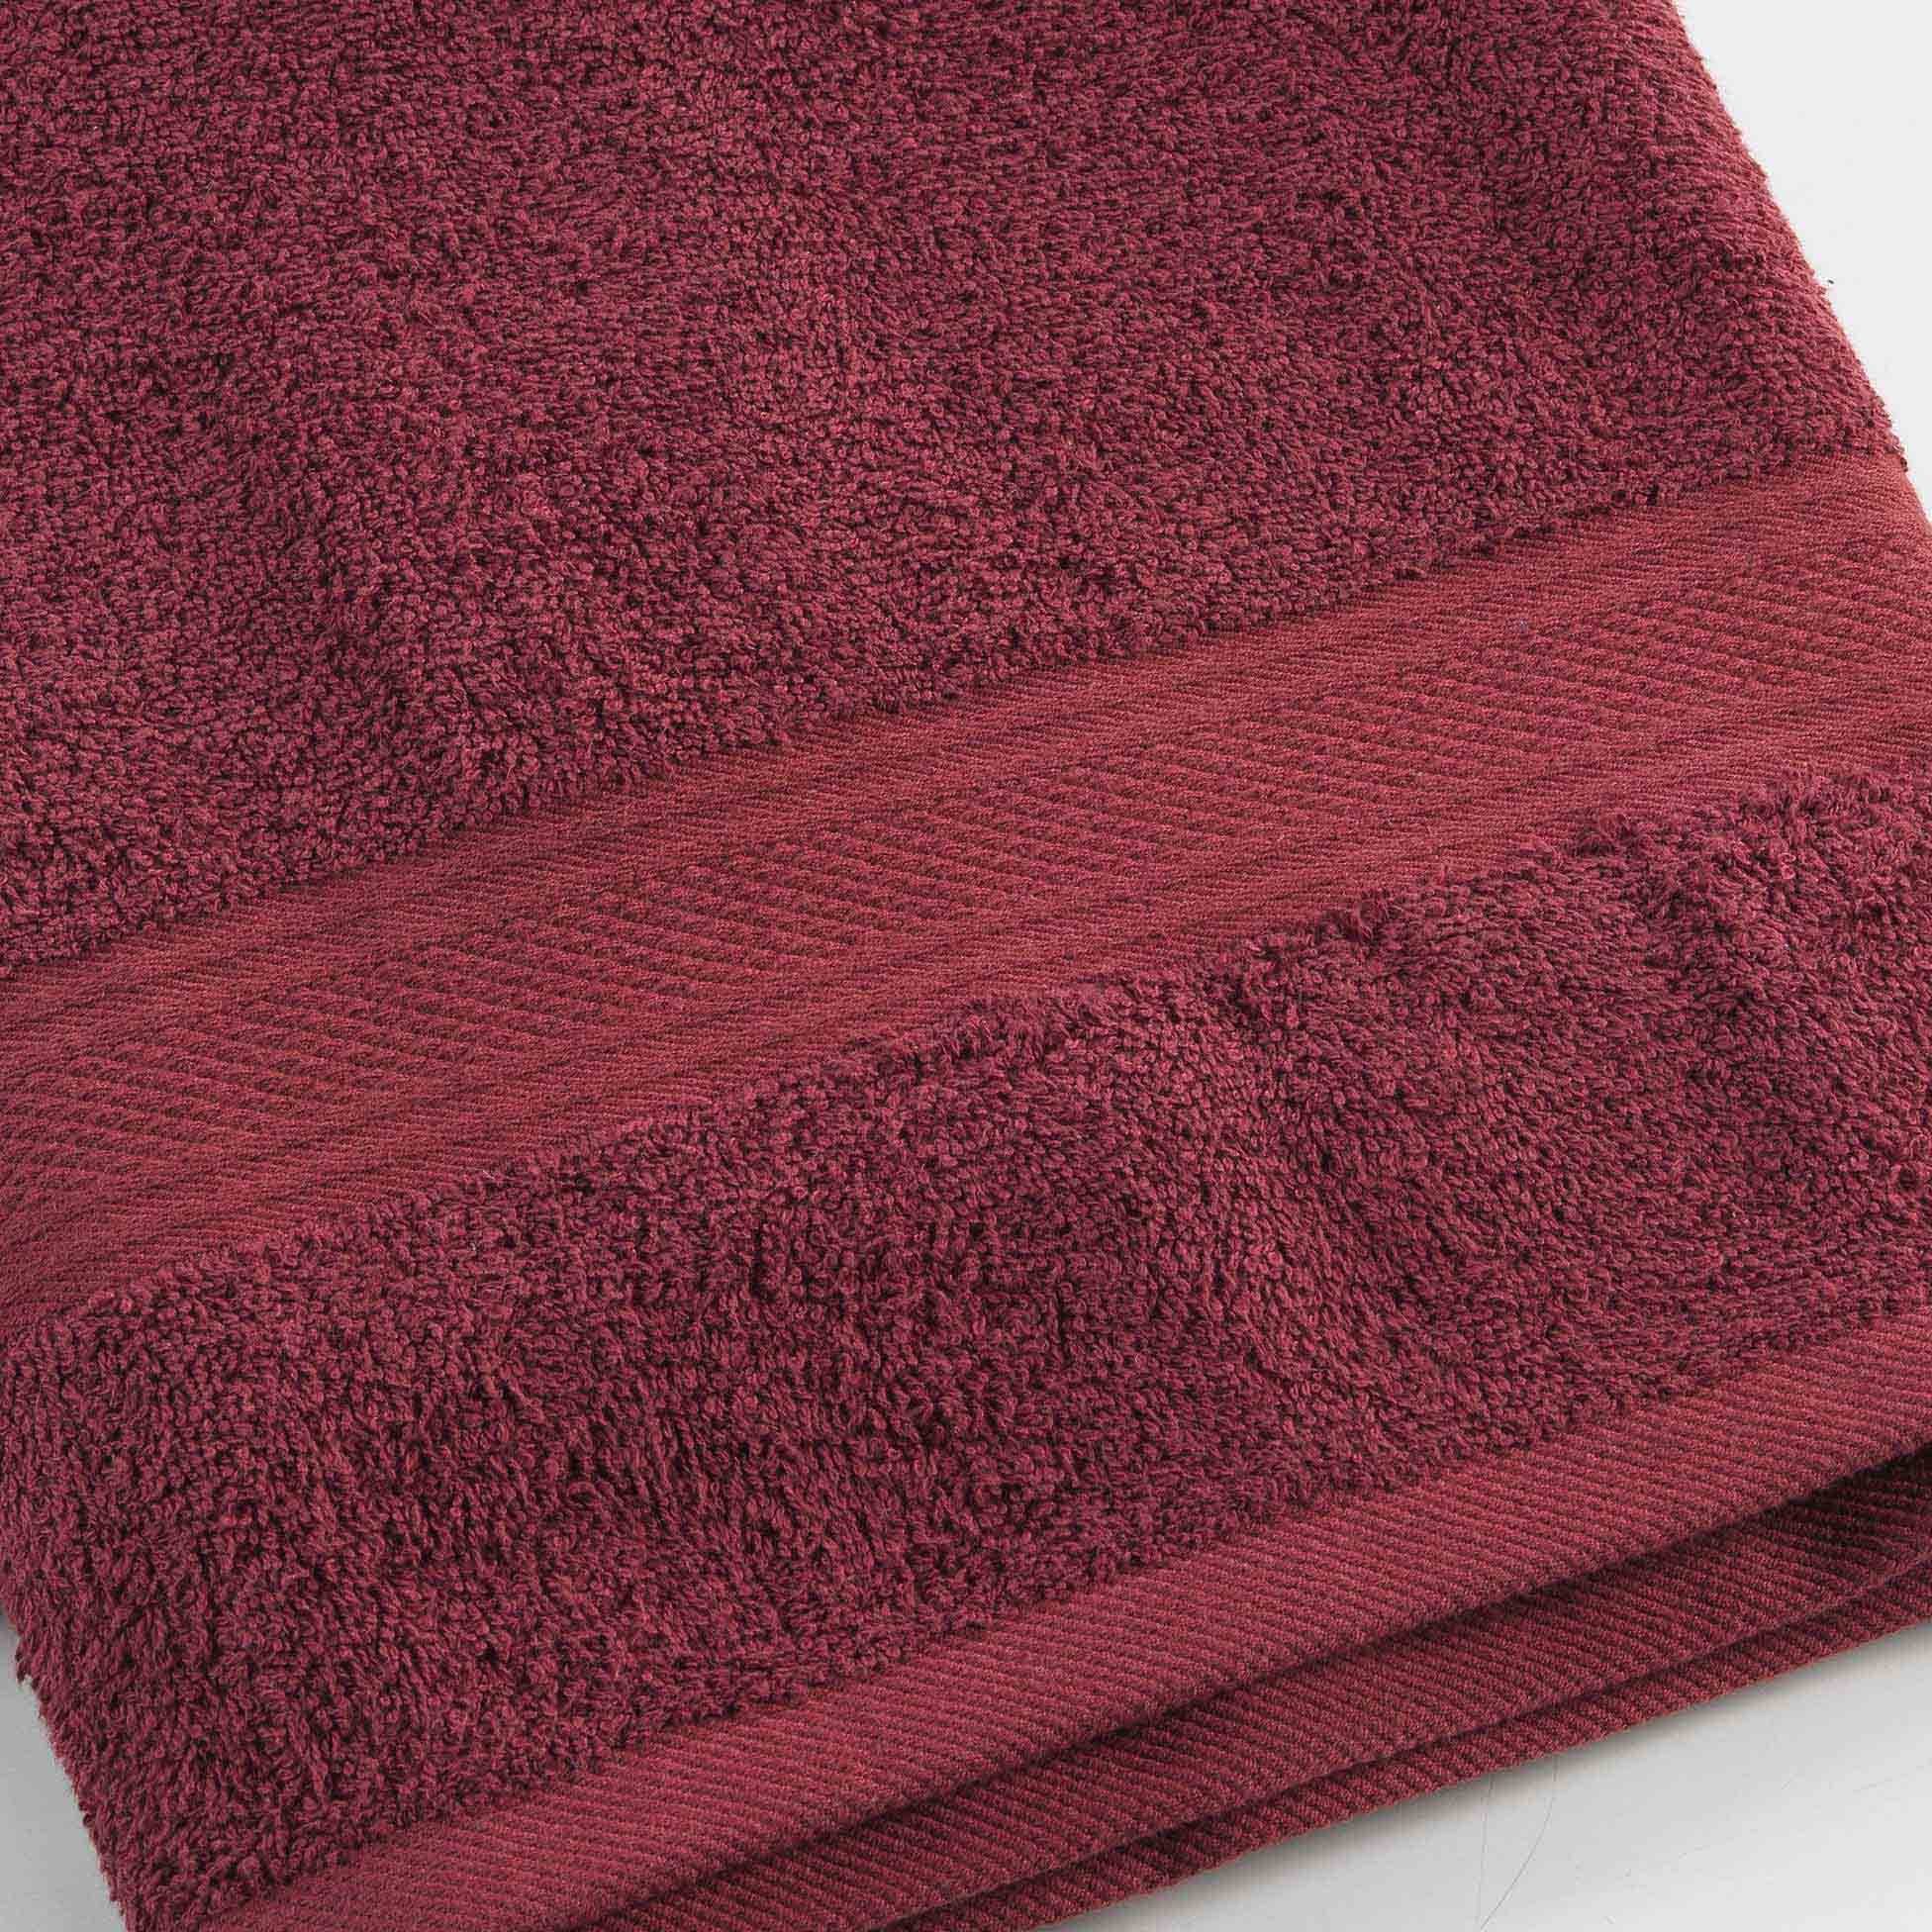 Handtuch Handtuch Handtücher Bordeaux Frottee 50x90cm, dynamic24 100% 50x90cm Handtuch Baumwolle Gästehandtuch